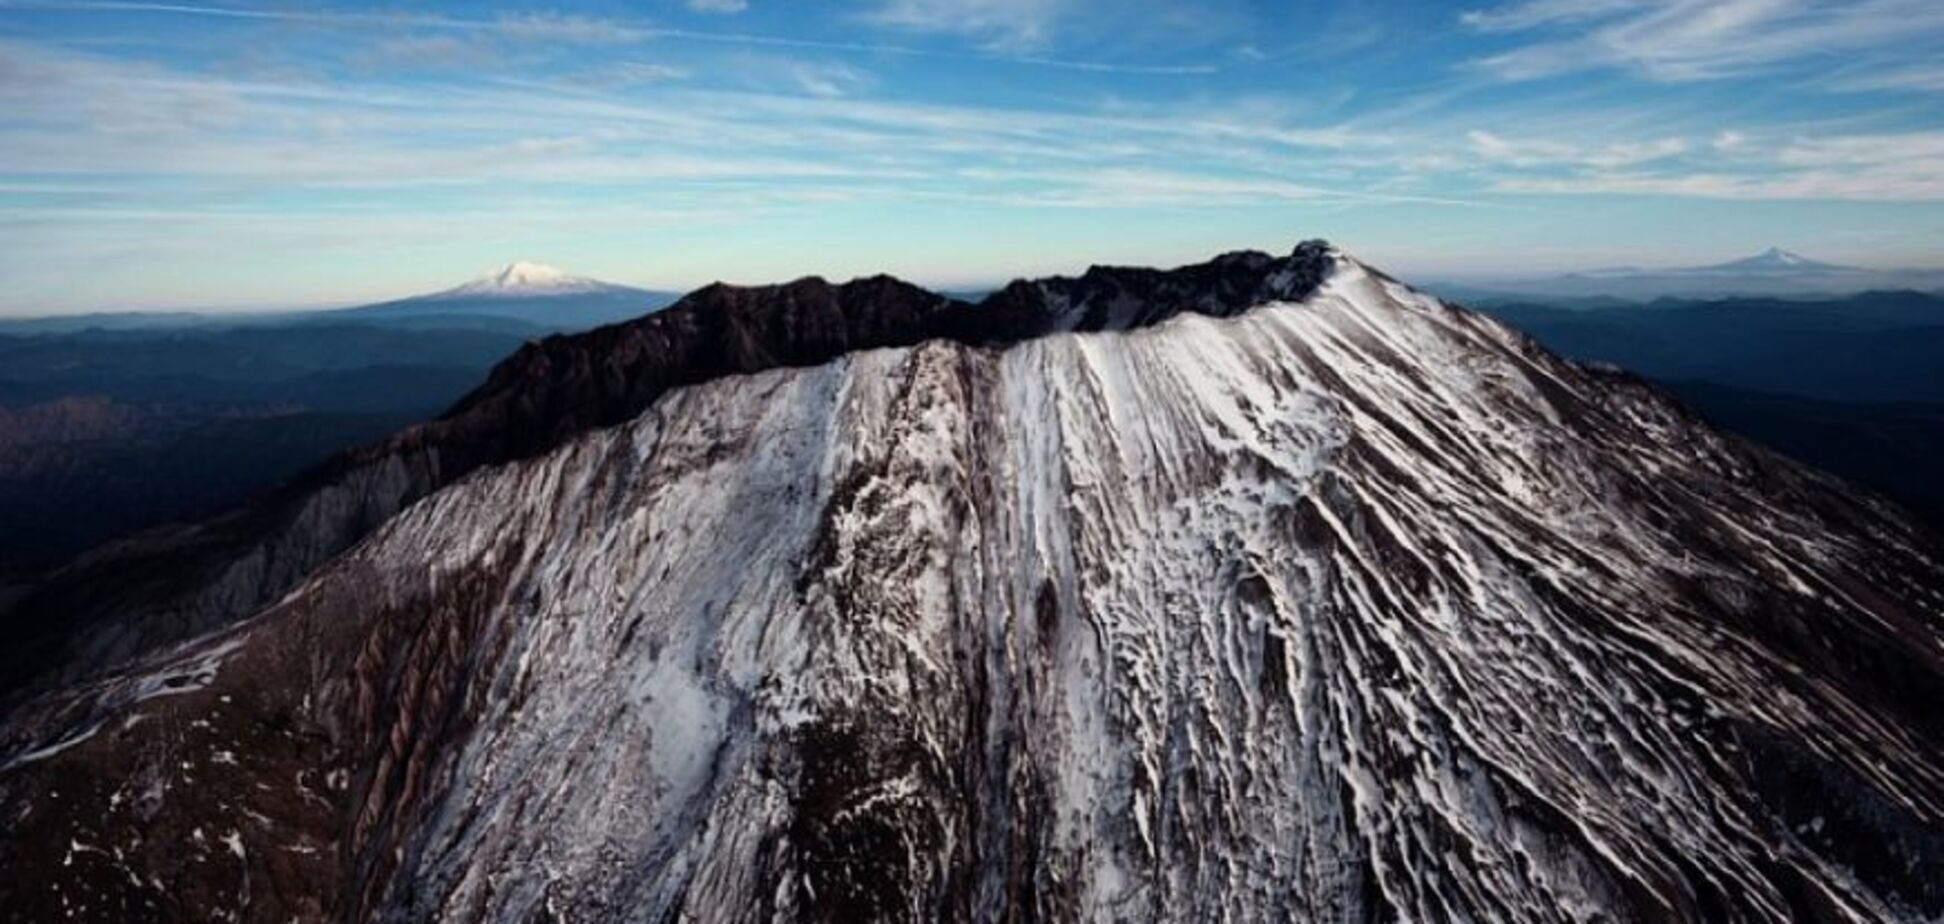  Рванет в любую минуту: ученые напророчили глобальный хаос из-за вулкана